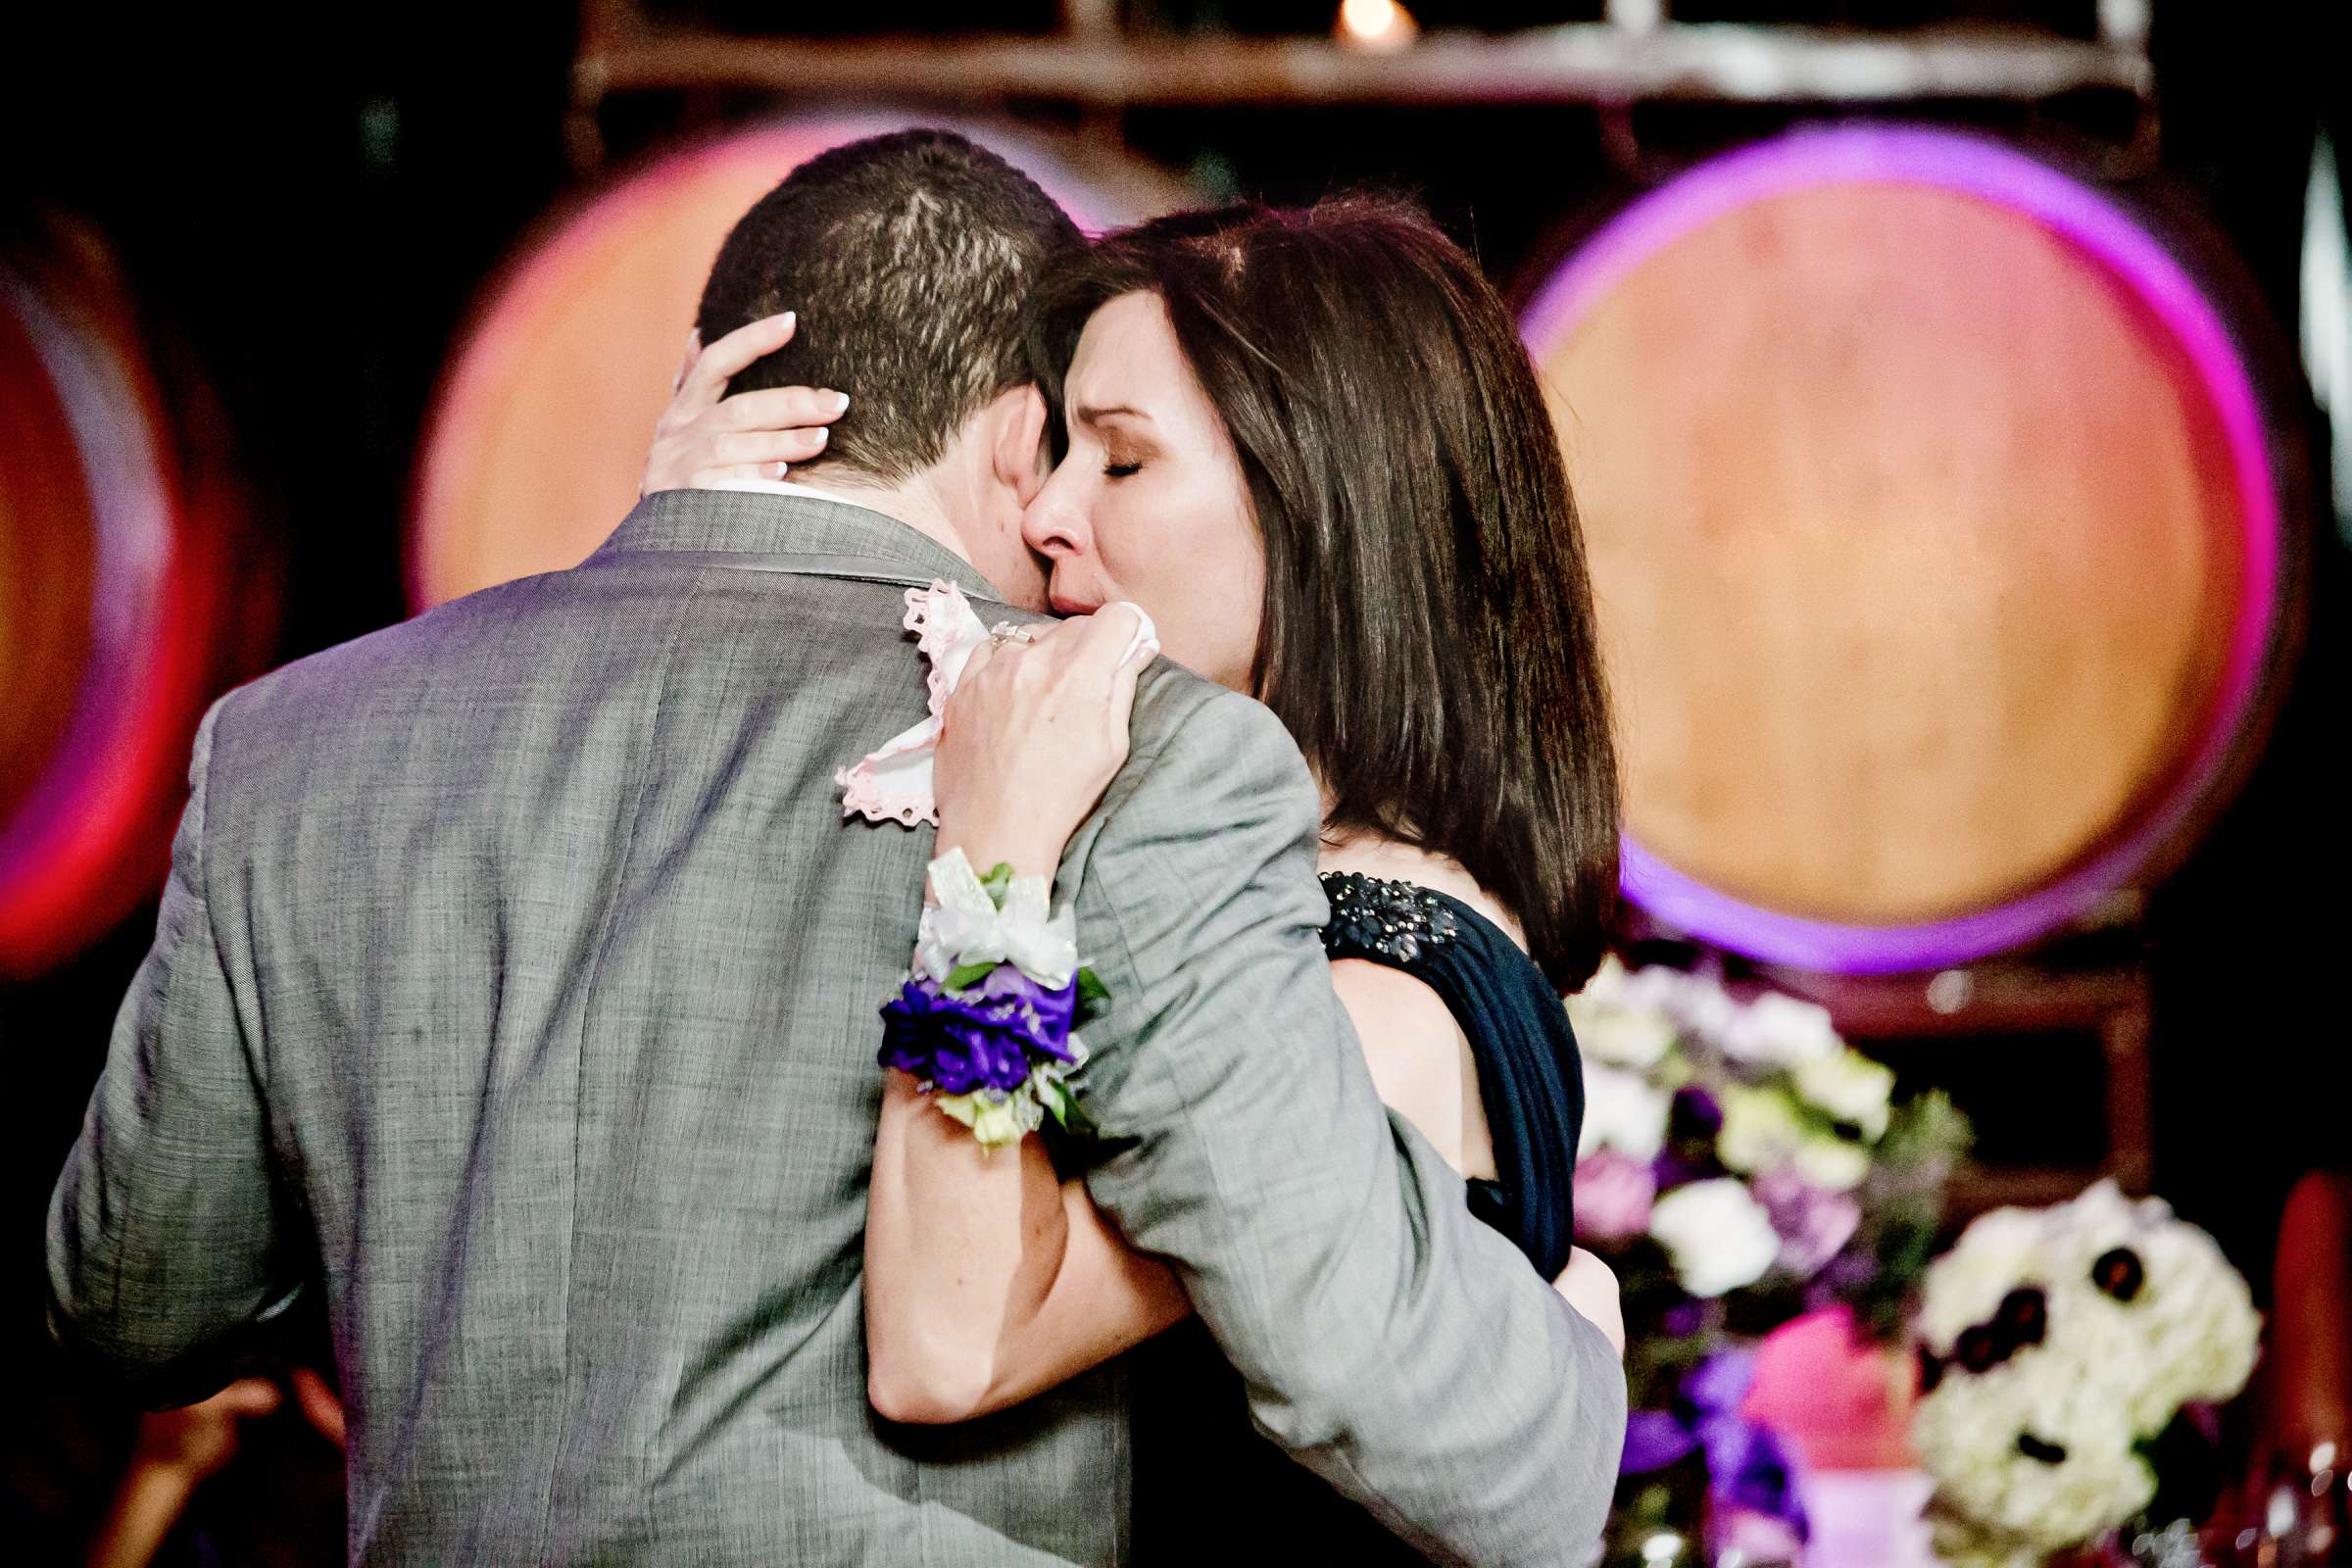 Mount Palomar Winery Wedding, Brandi and Jason Wedding Photo #321693 by True Photography